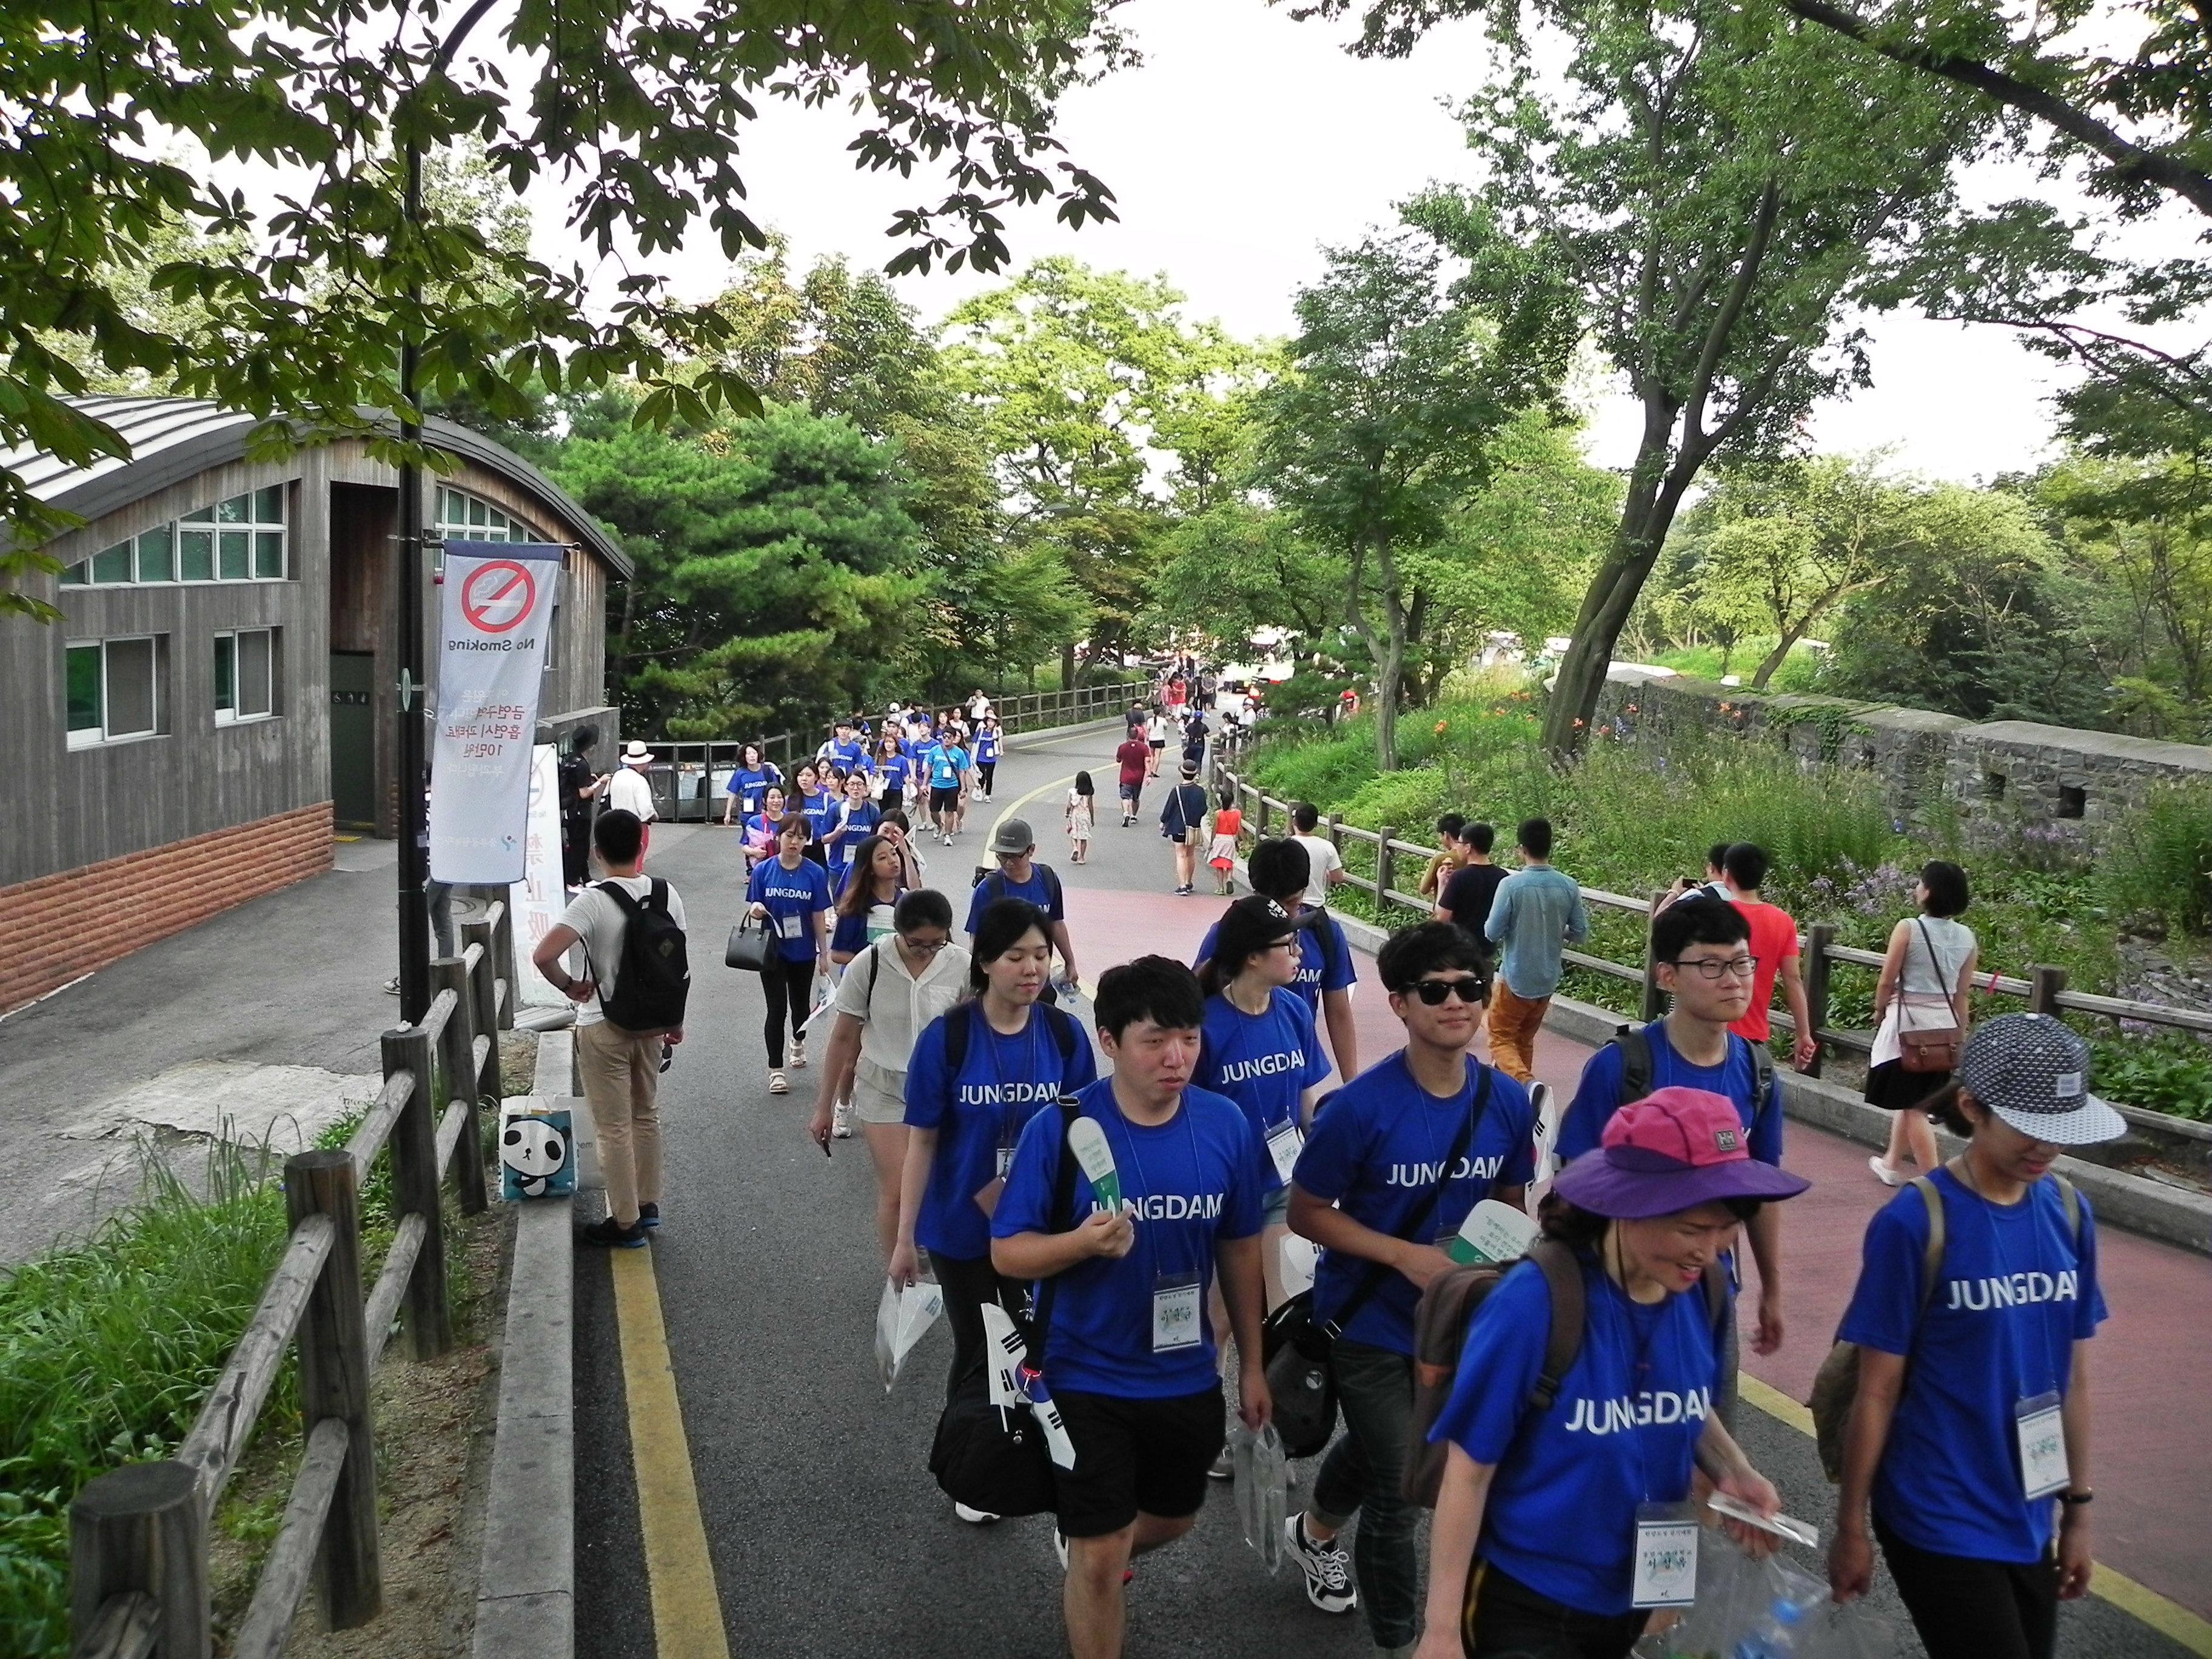 아산장학생은 나눔문화 확산을 위해 8.13일과 14일 한양도성 걷기 행사를 개최했습니다.6